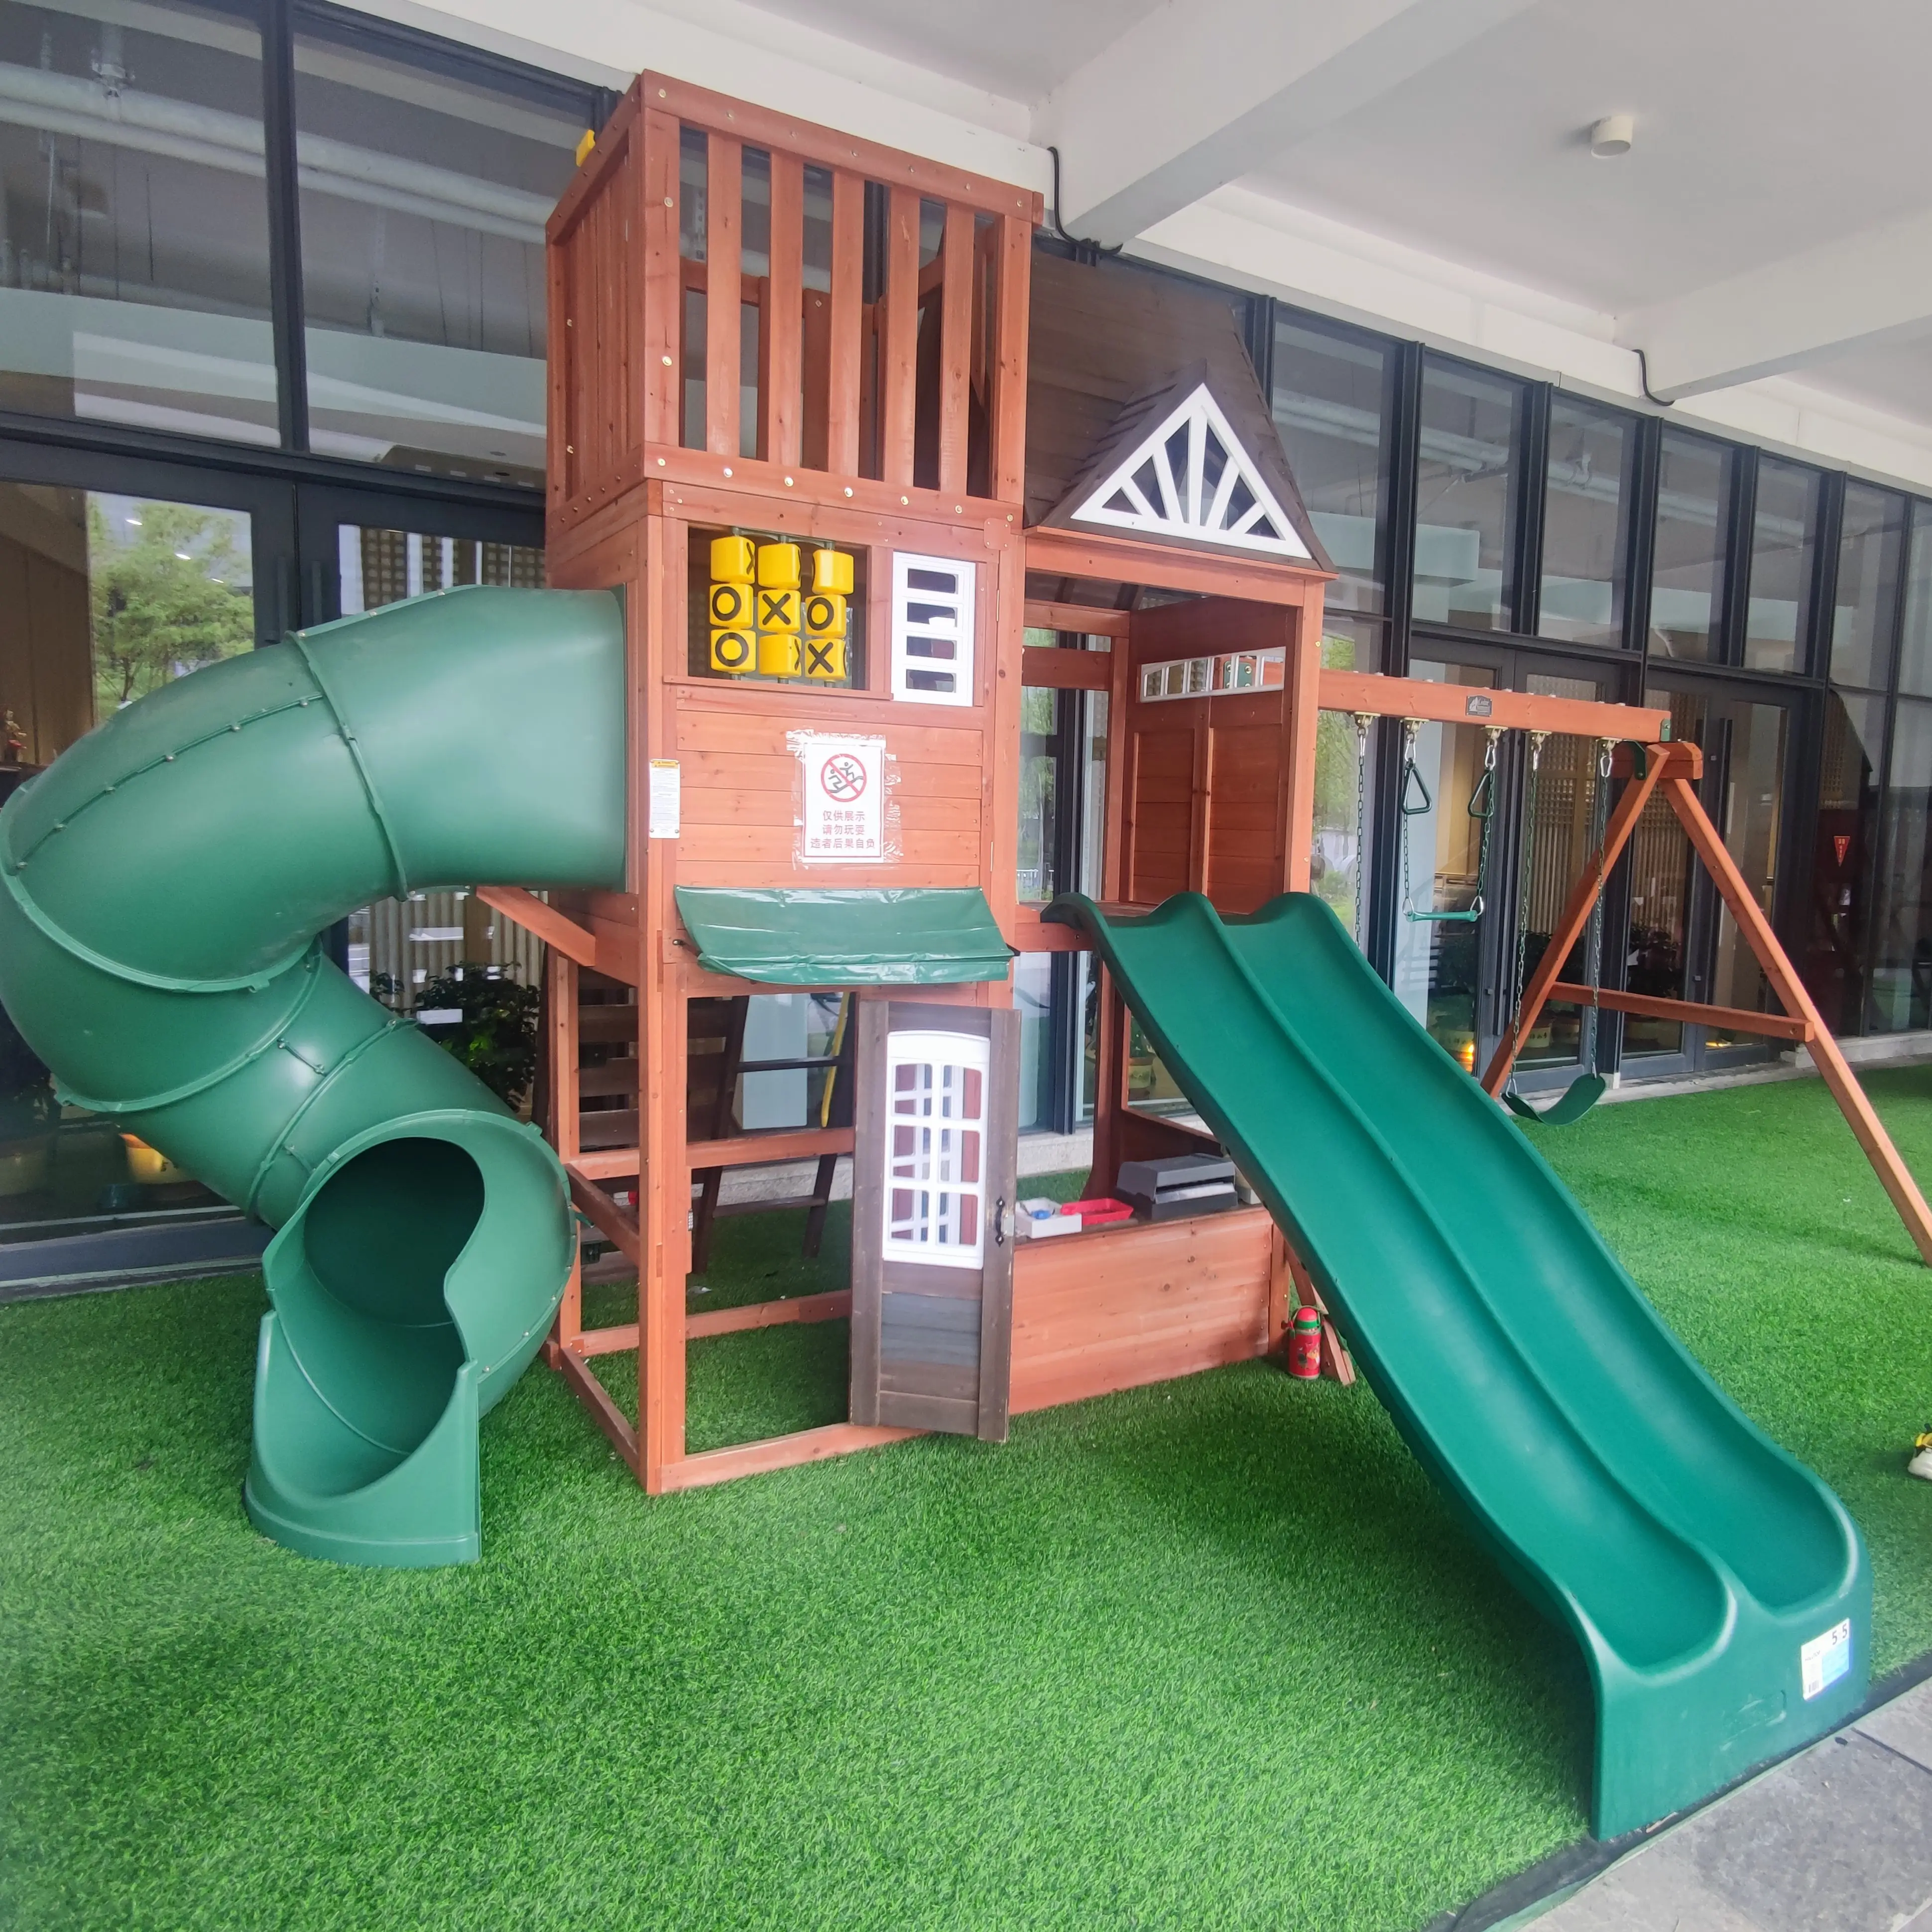 Casa de brincar de madeira personalizada ao ar livre, playground infantil de madeira com conjunto de escorregador e balanço, caixa de areia